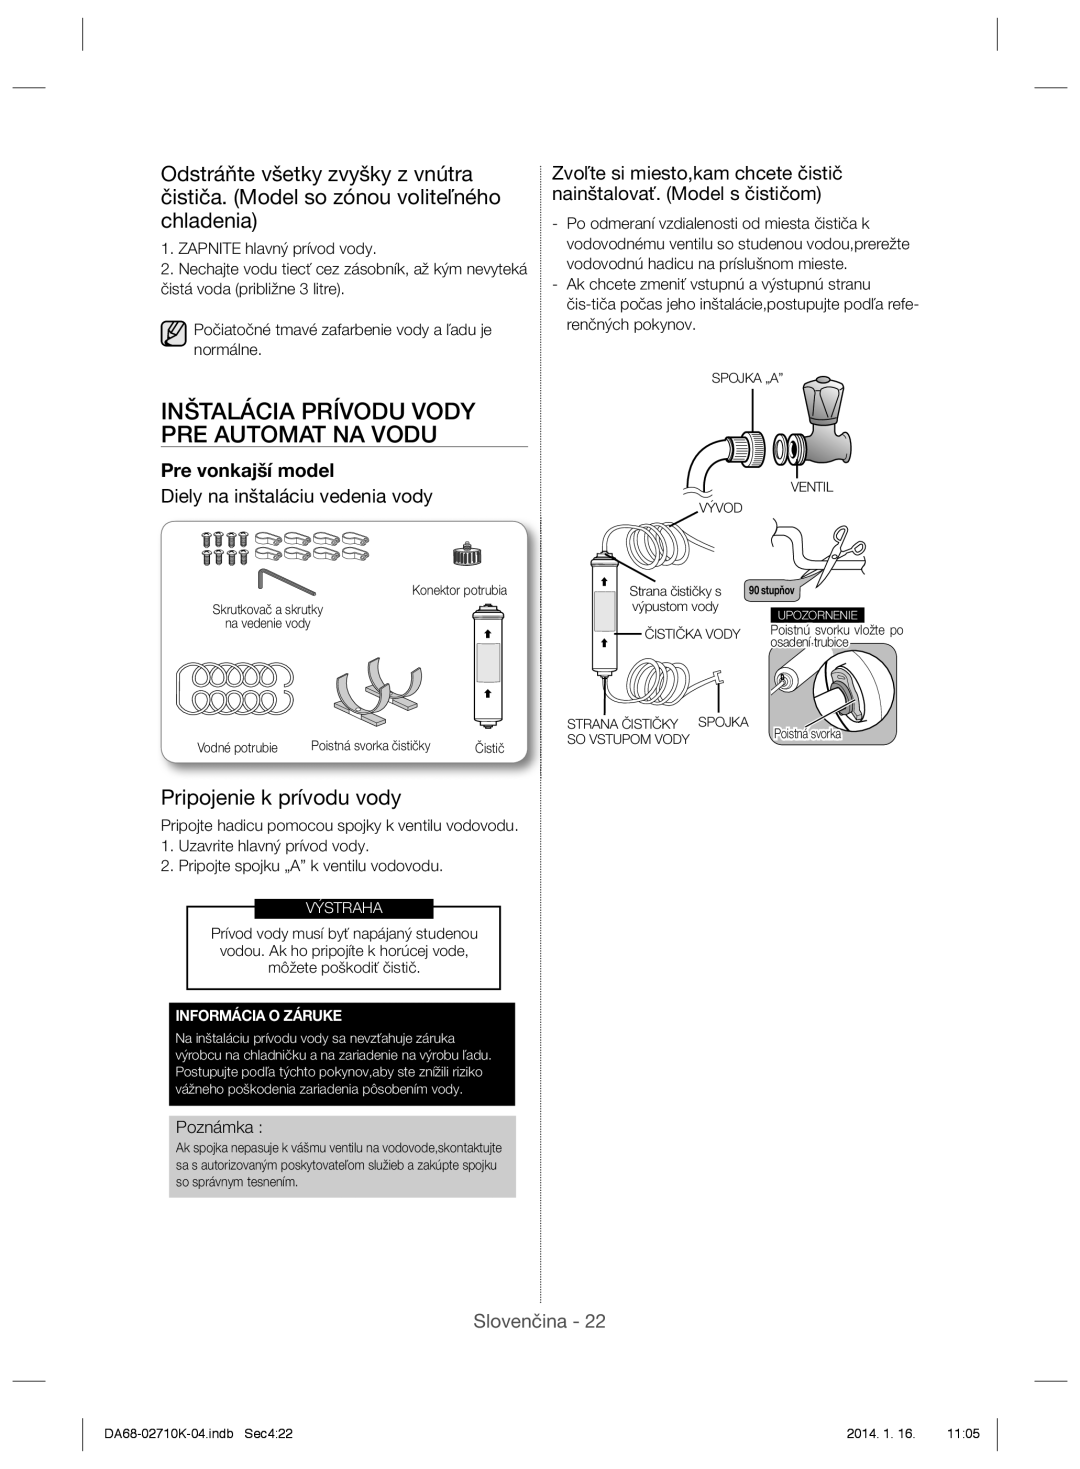 Samsung RS7768FHCBC/EF manual Inštalácia Prívodu Vody Pre Automat Na Vodu, Pripojenie k prívodu vody, Pre vonkajší model 